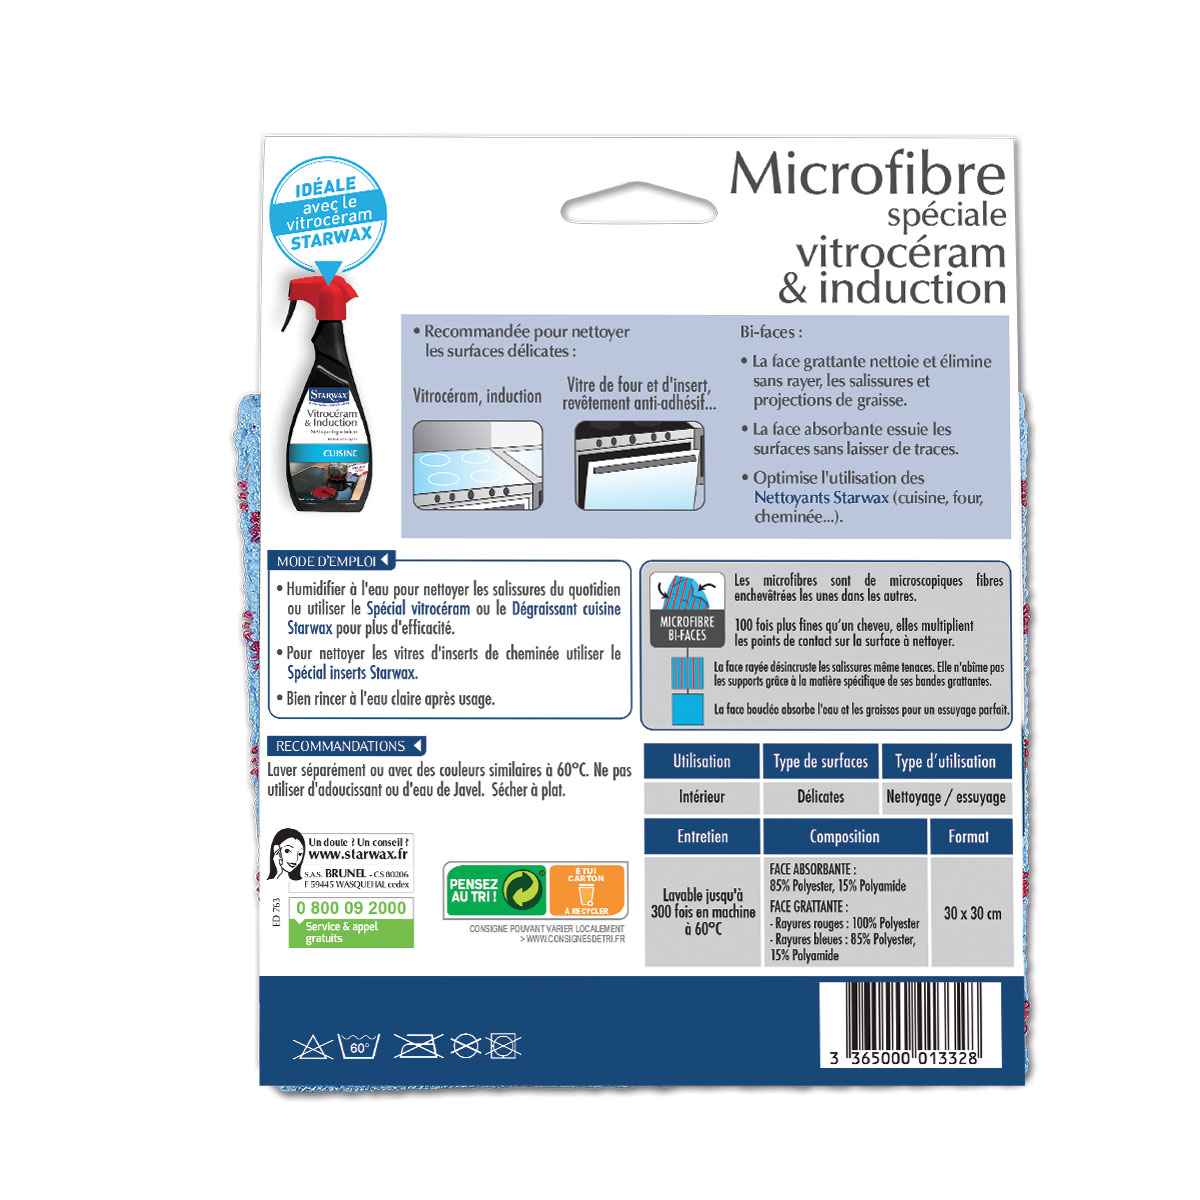 1332-microfibre-spéciale-vitro-verso-02